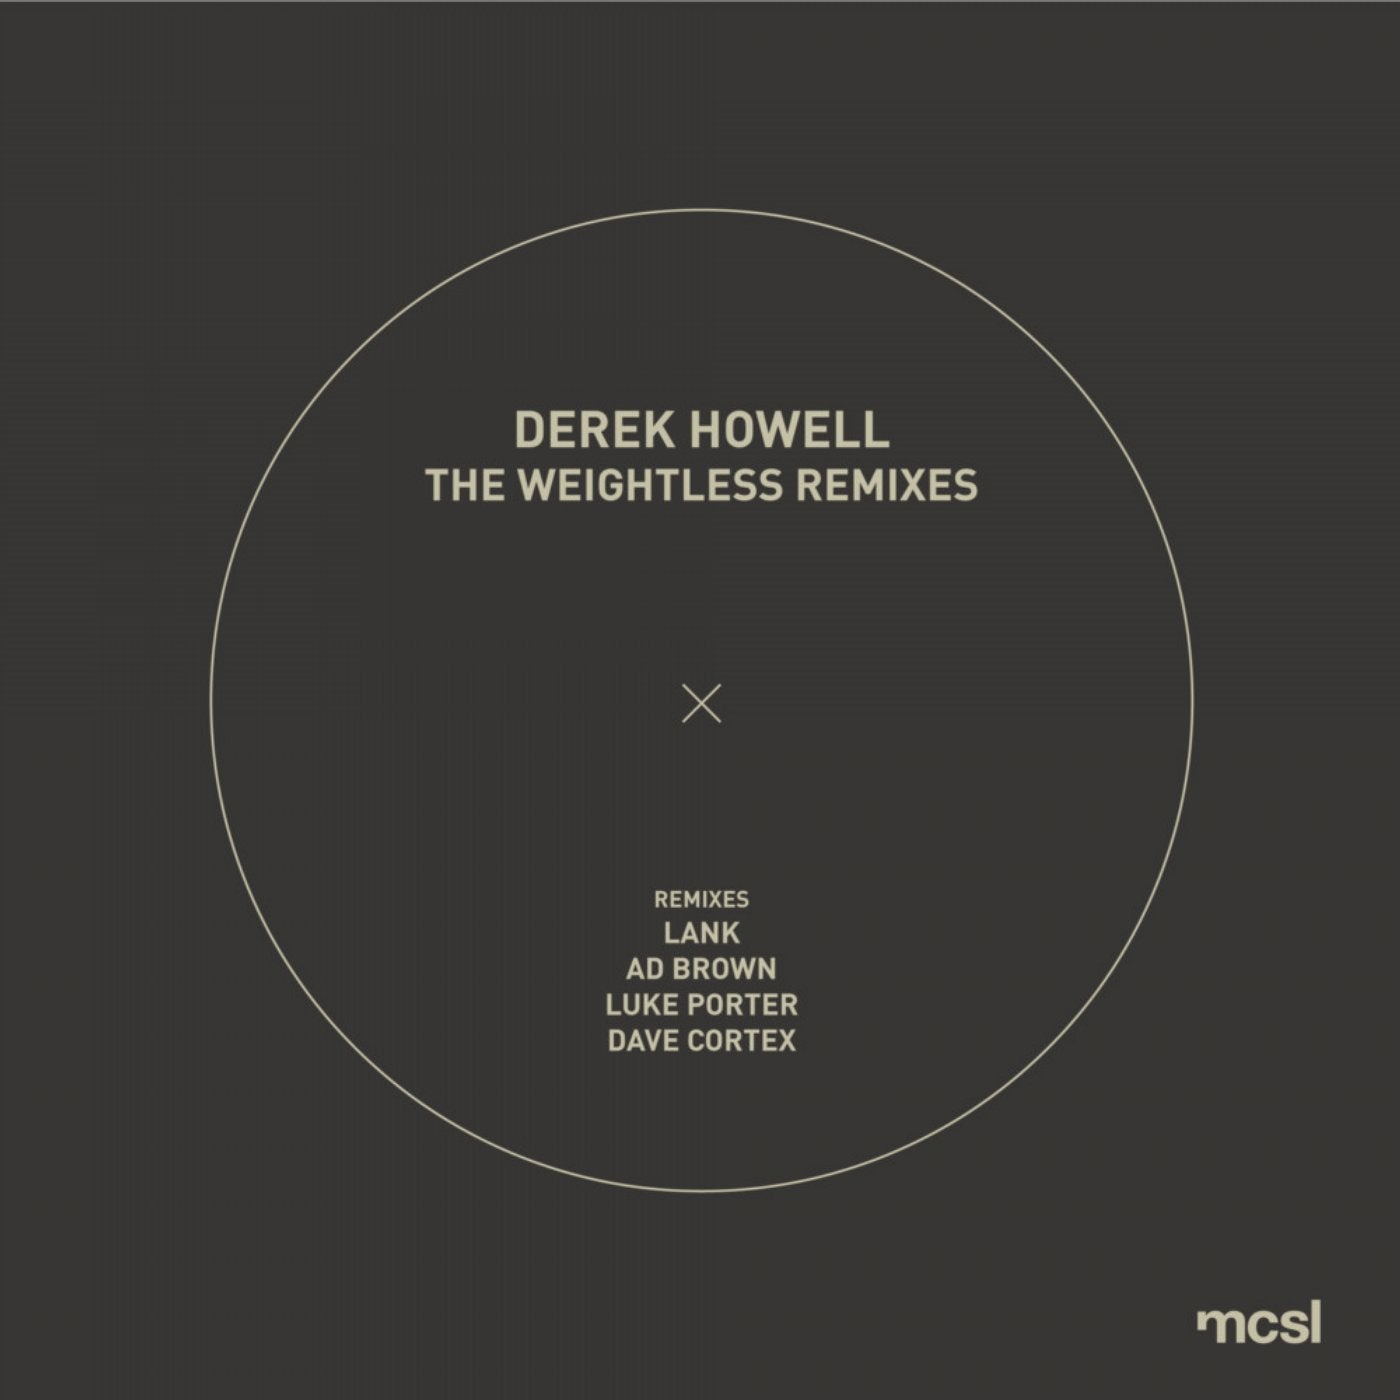 The Weightless Remixes